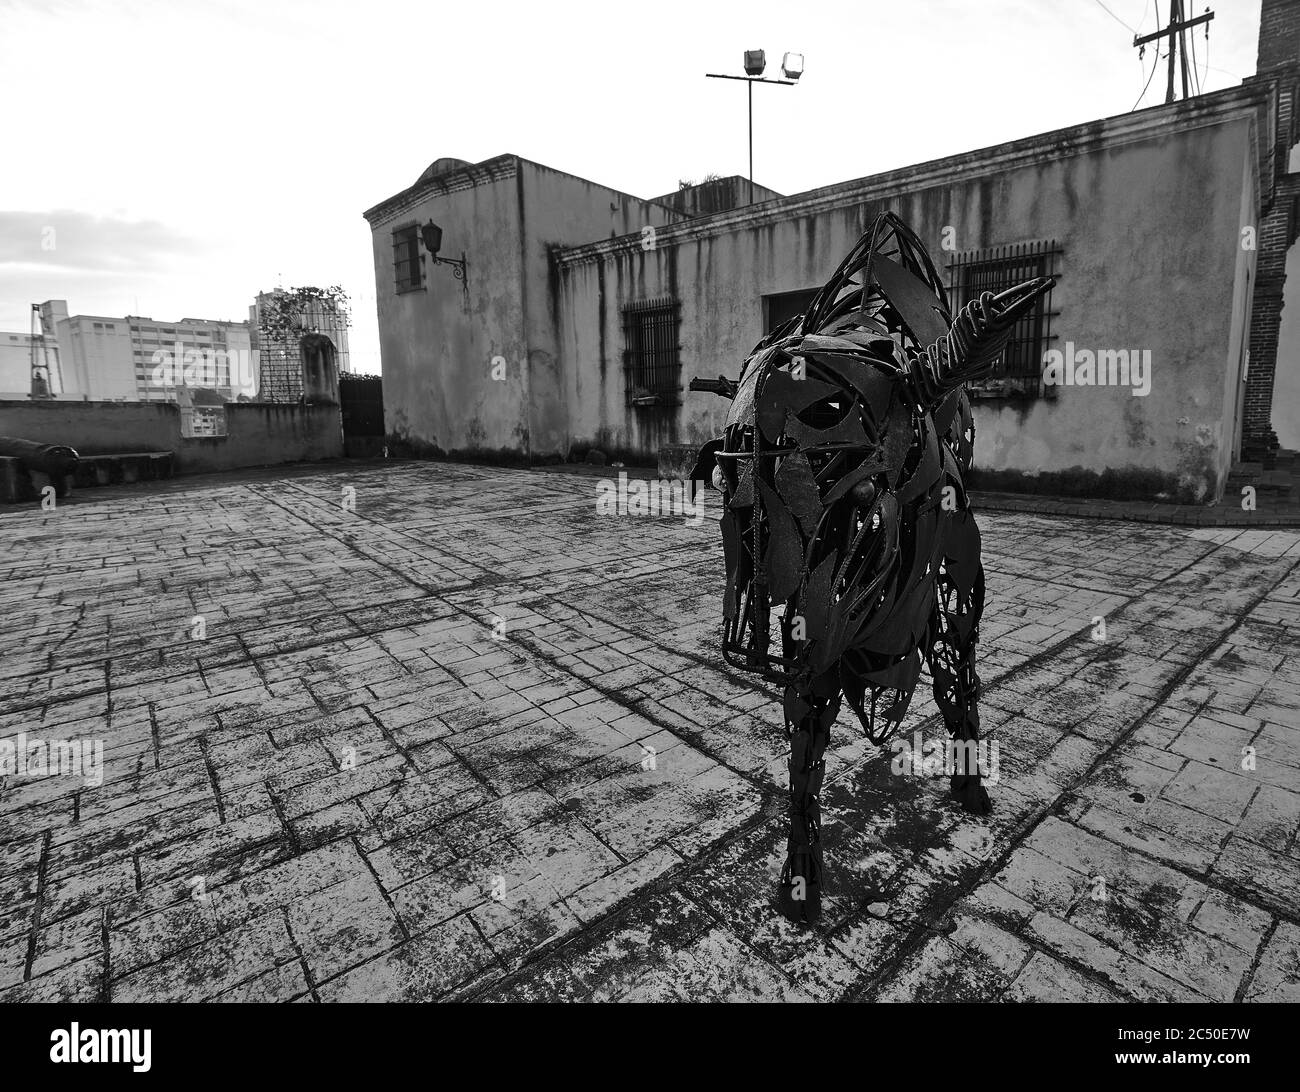 Sculpture Of A Bull. Modern art. Santo Domingo, Dominican Republic. 27.12.2016. Stock Photo